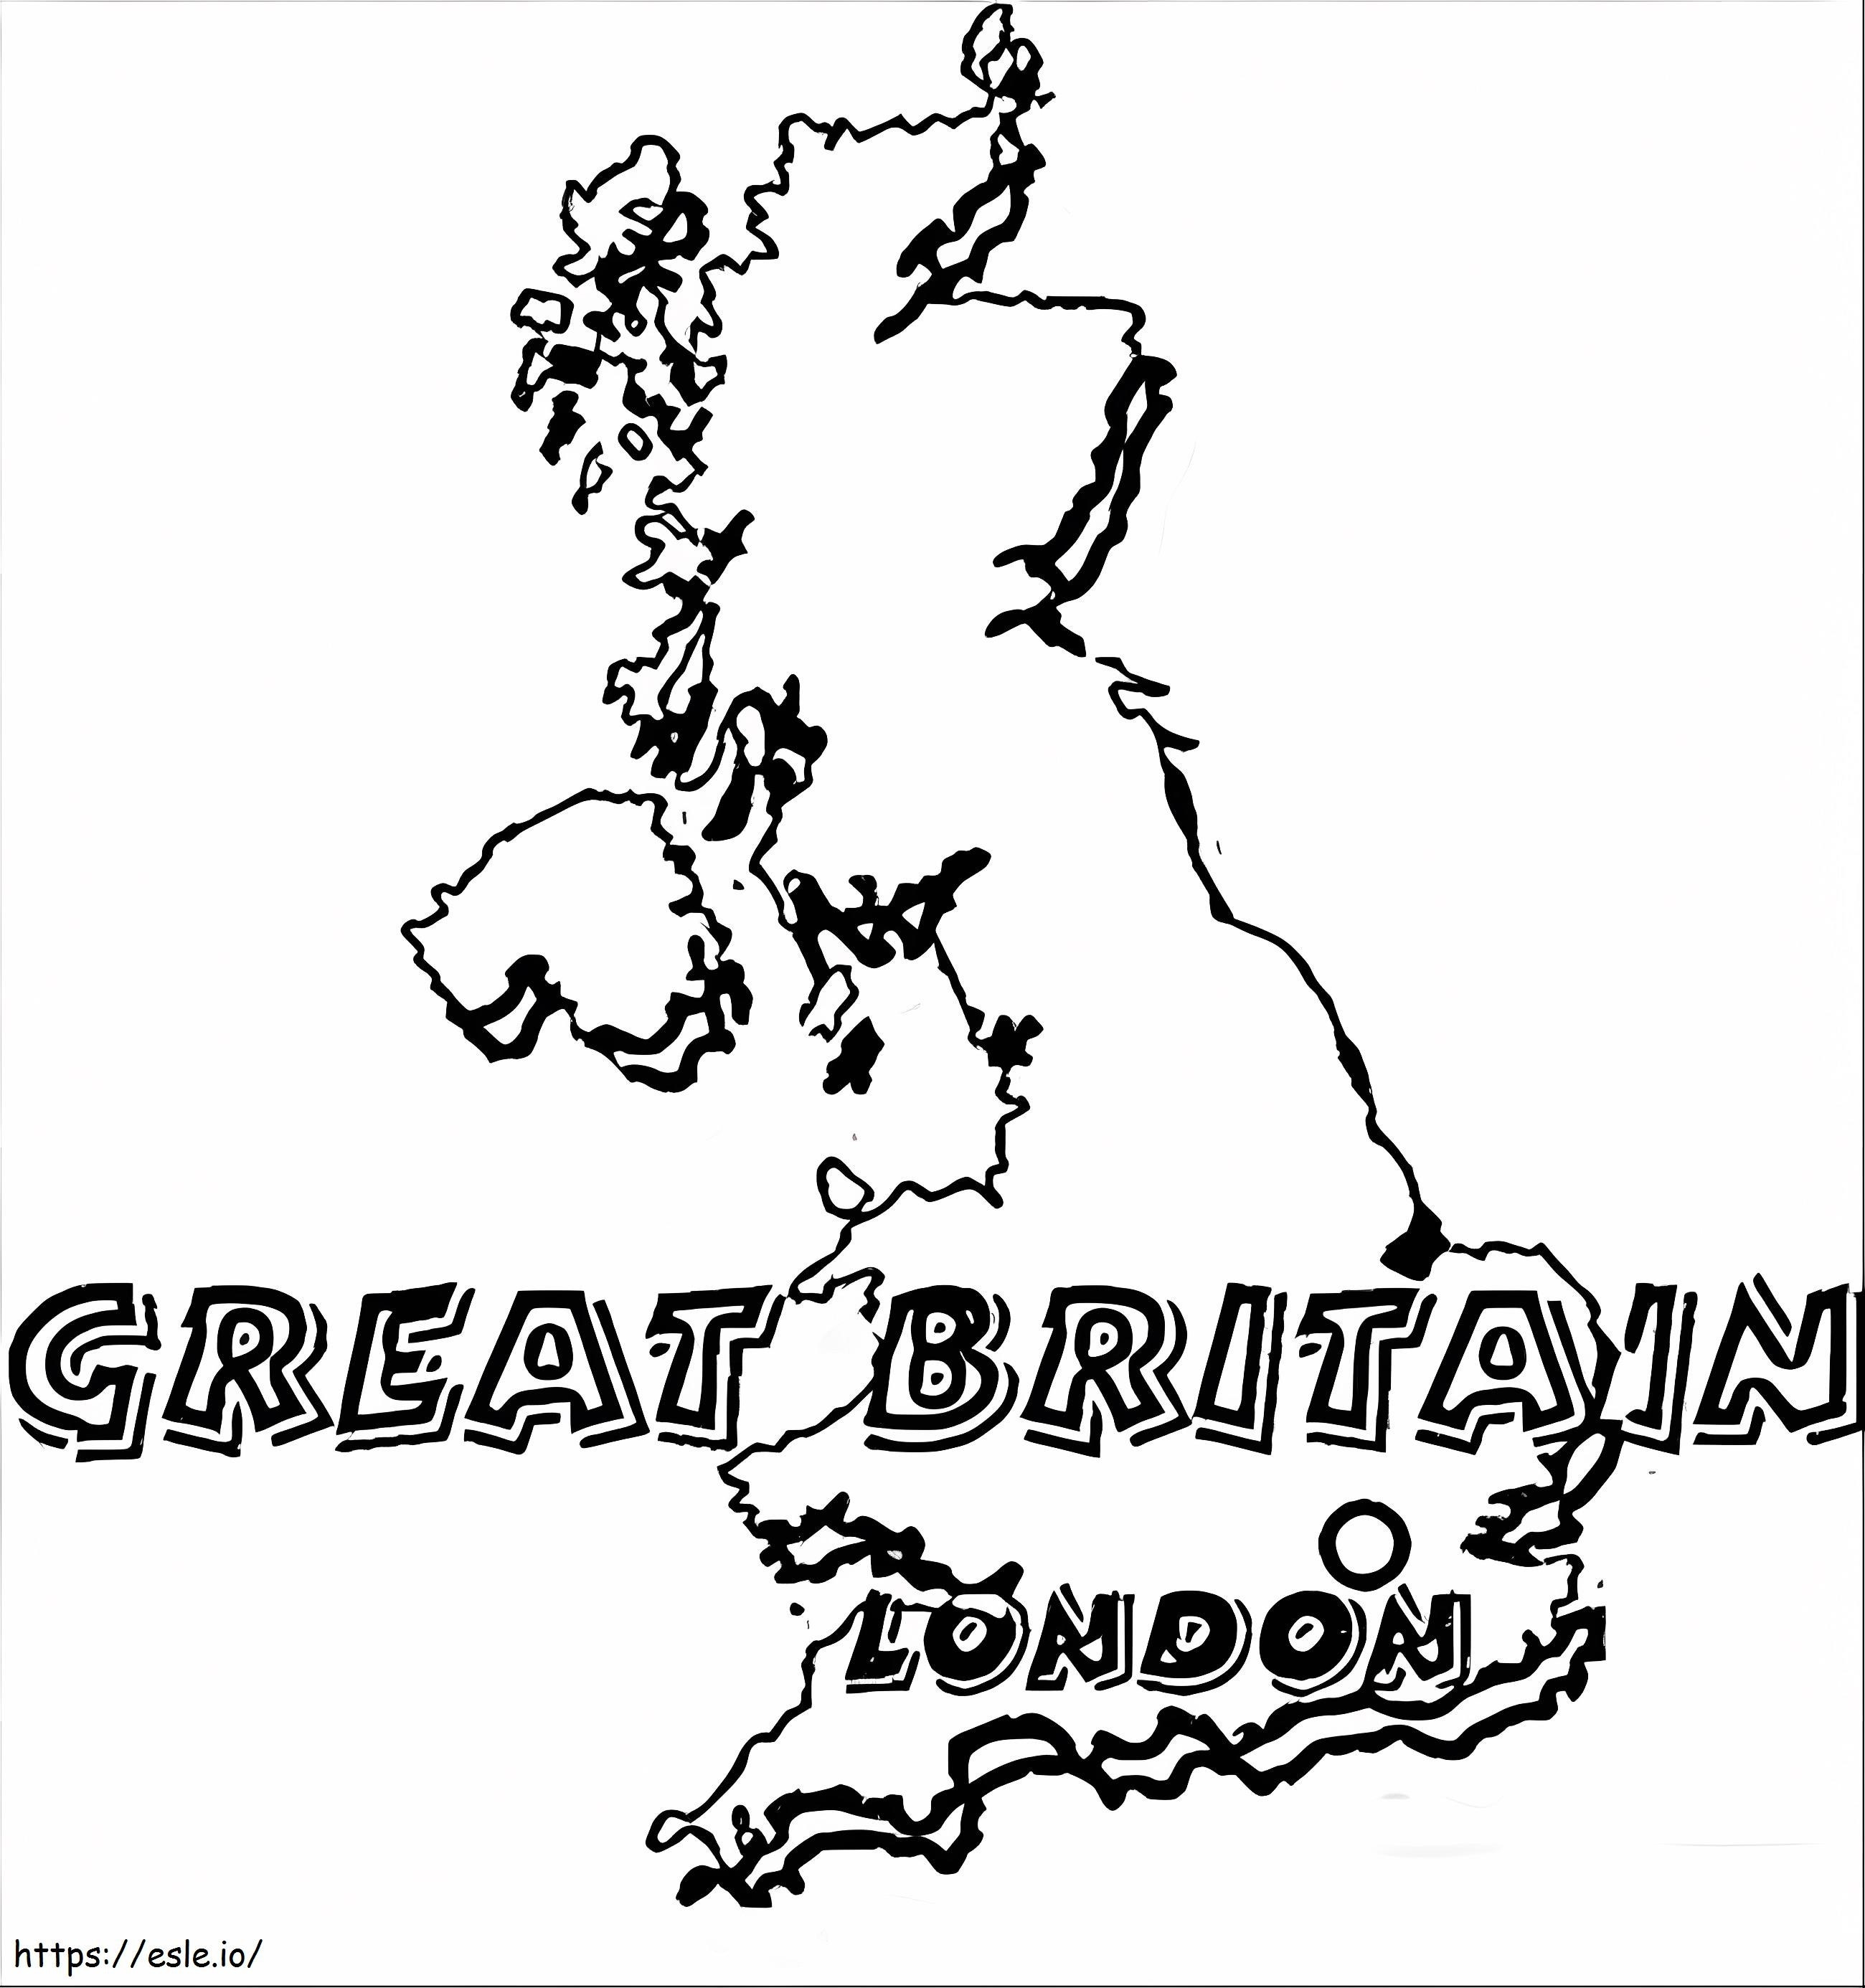 Mappa del Regno Unito da colorare